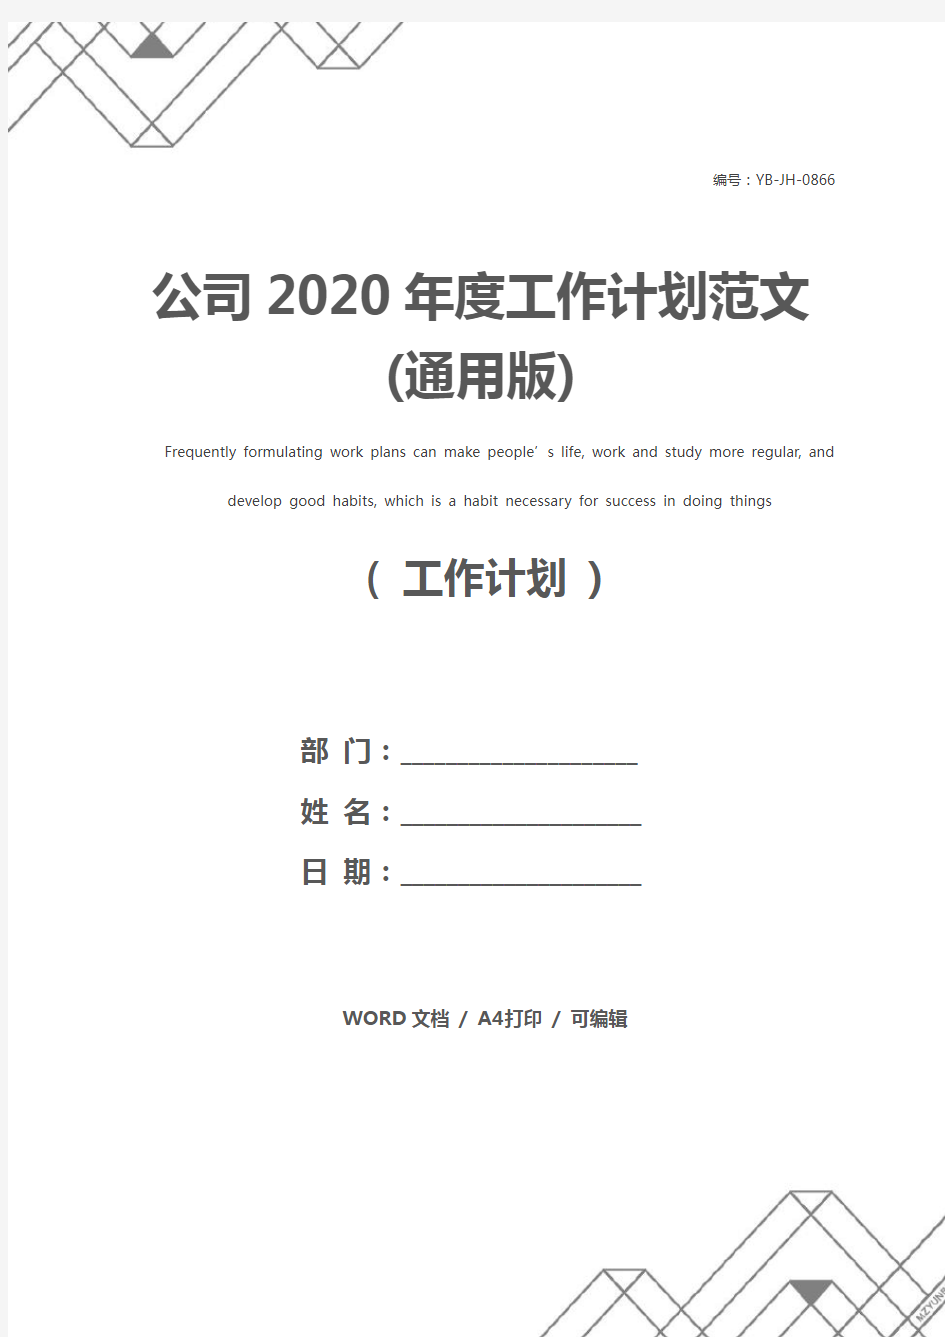 公司2020年度工作计划范文(通用版)